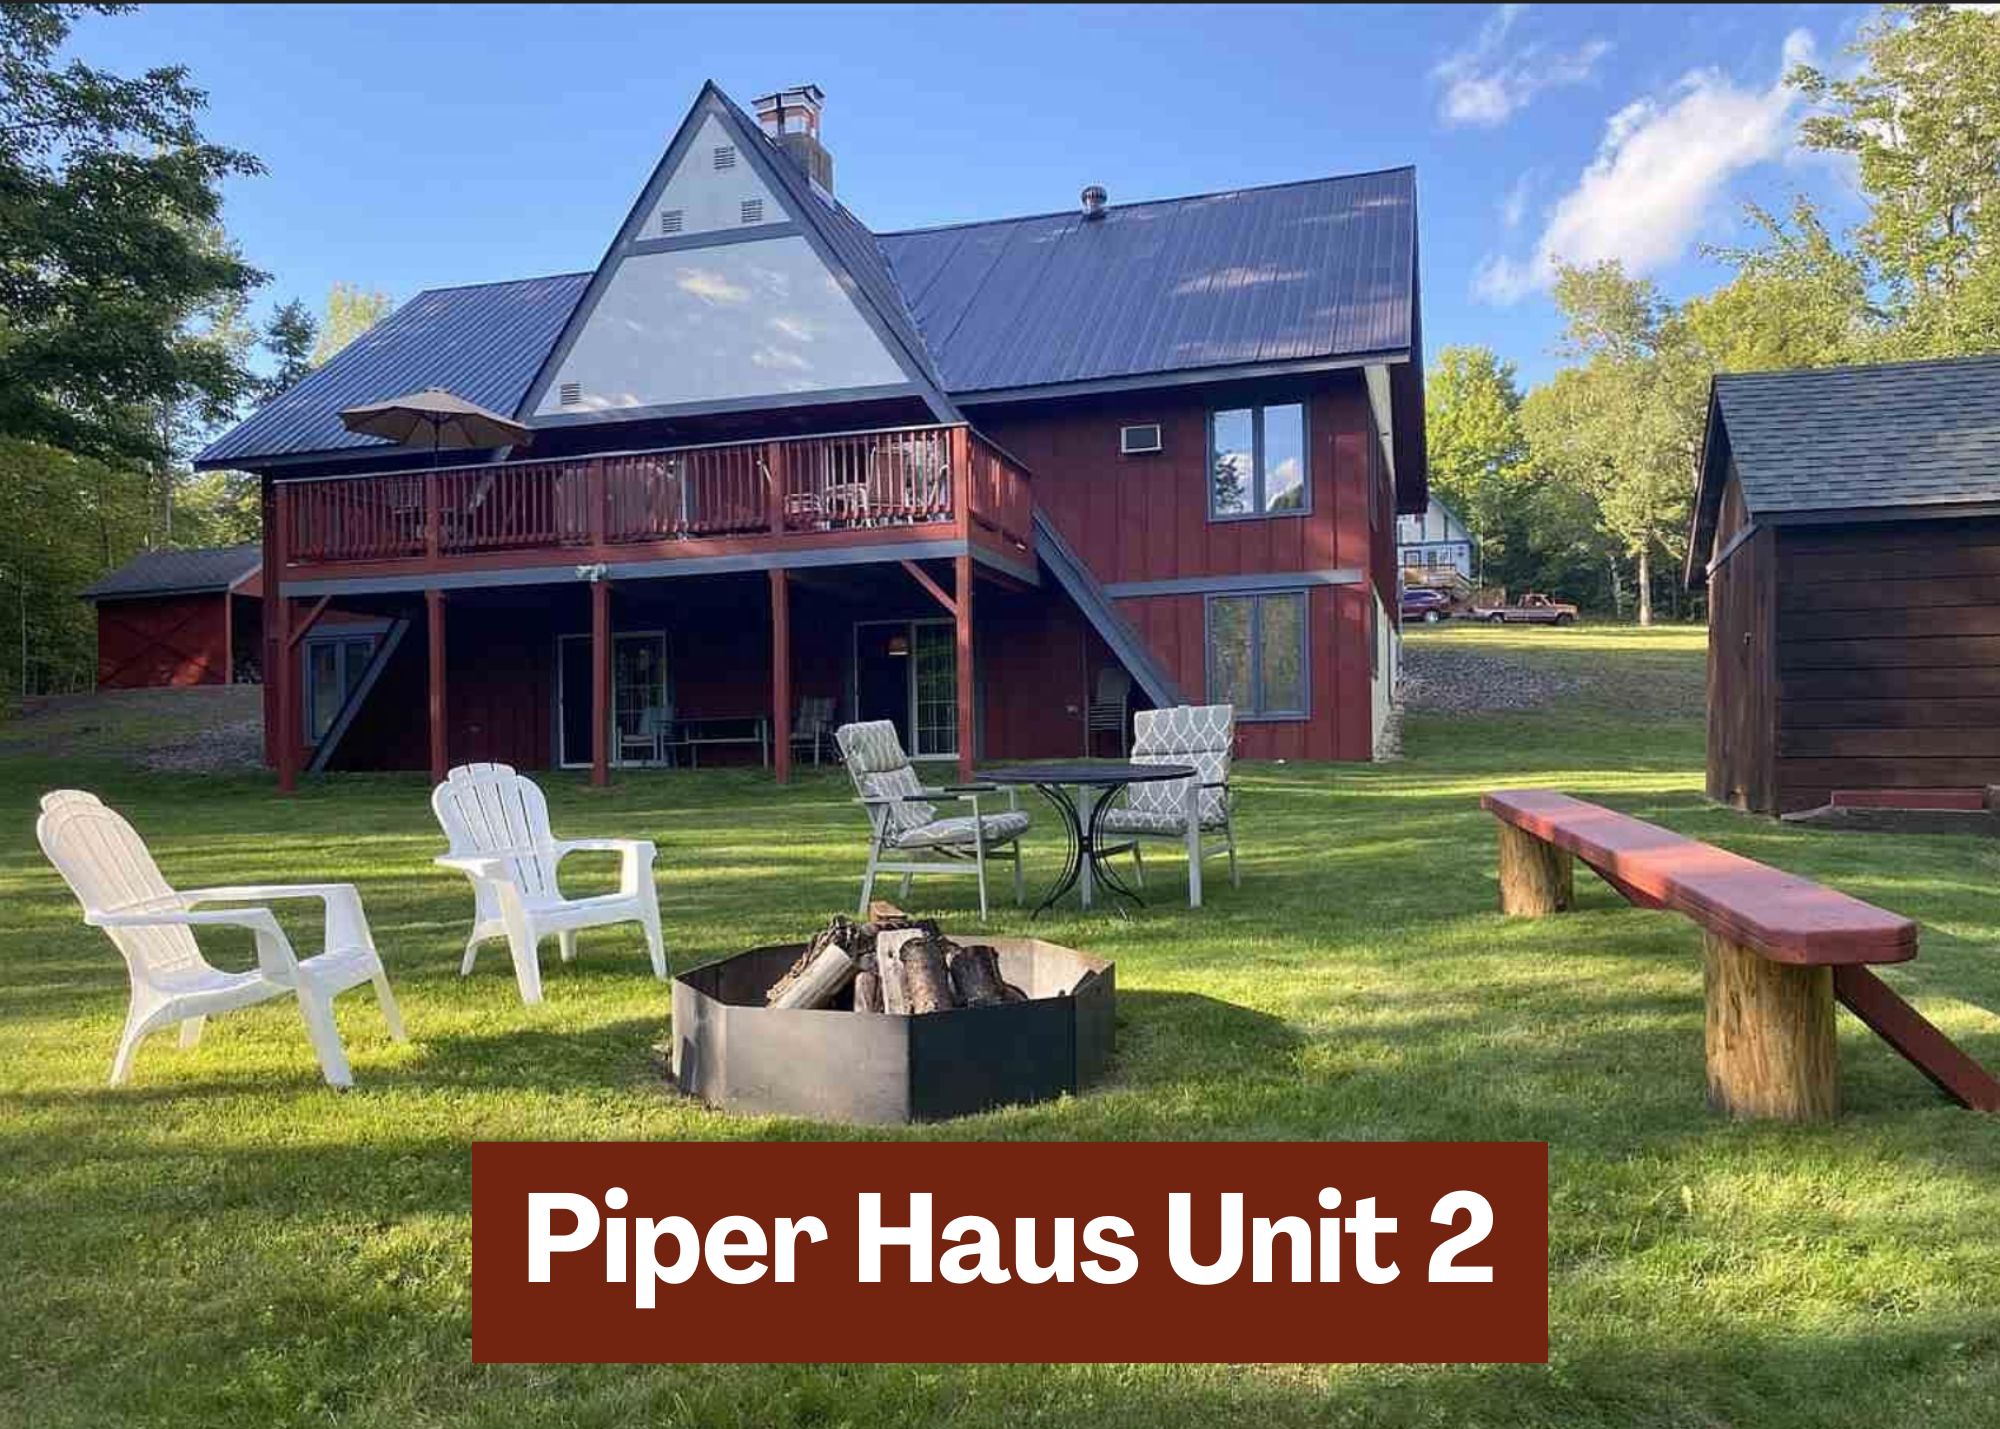 Piper Haus Chalet Unit 2